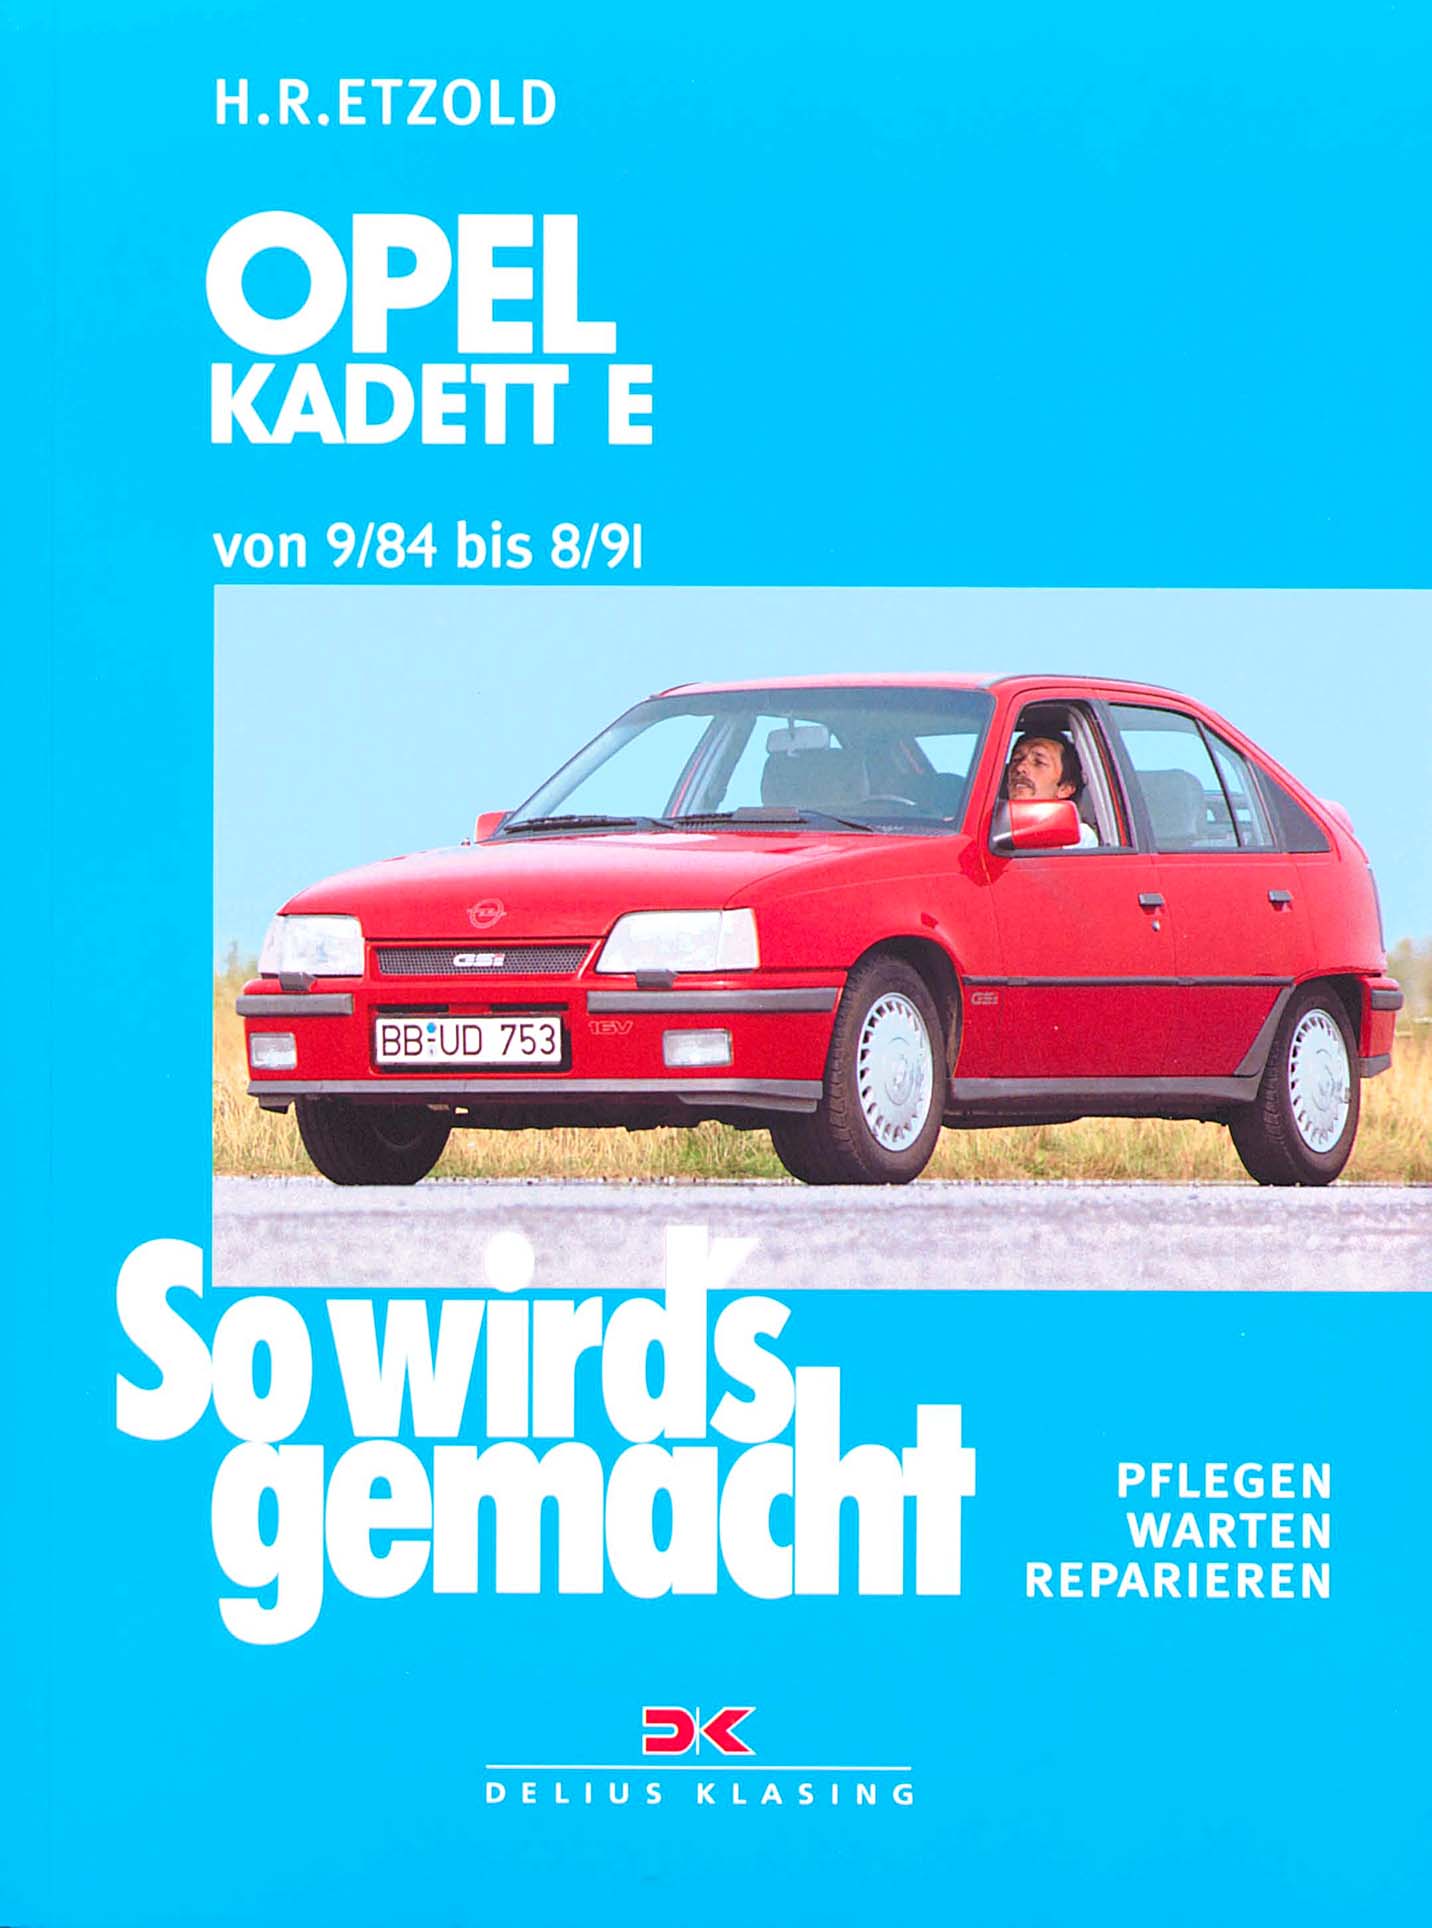 OPEL Kadett E 1,6 S 1,8 i 1984-1986 Motor Kupplung Reparaturanleitung B896 